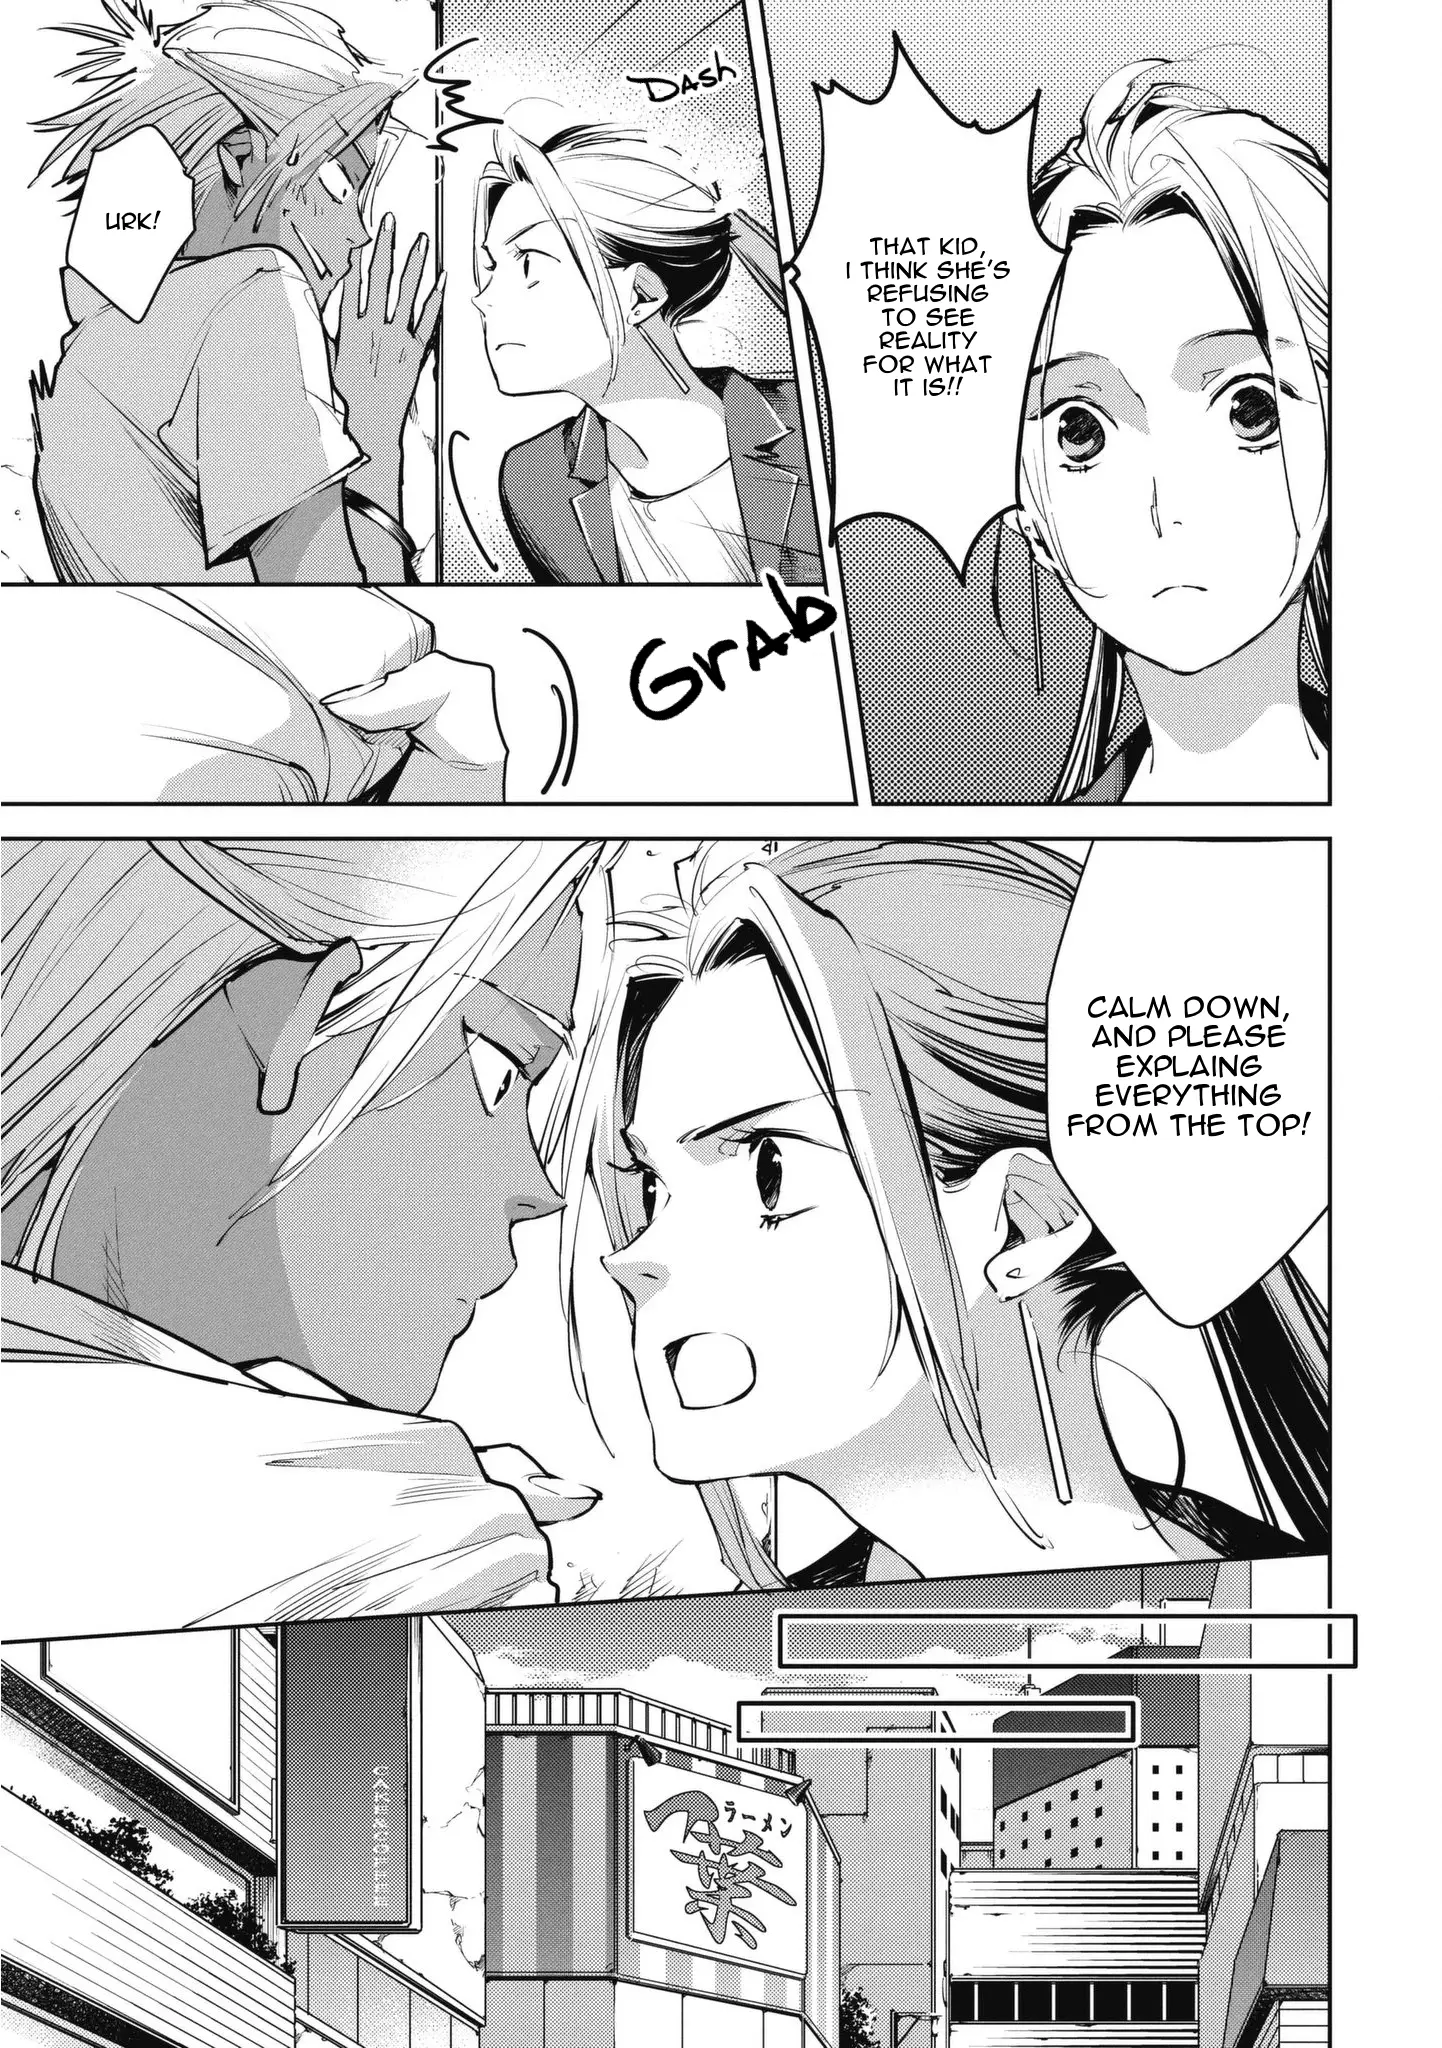 Okashiratsuki - 11 page 3